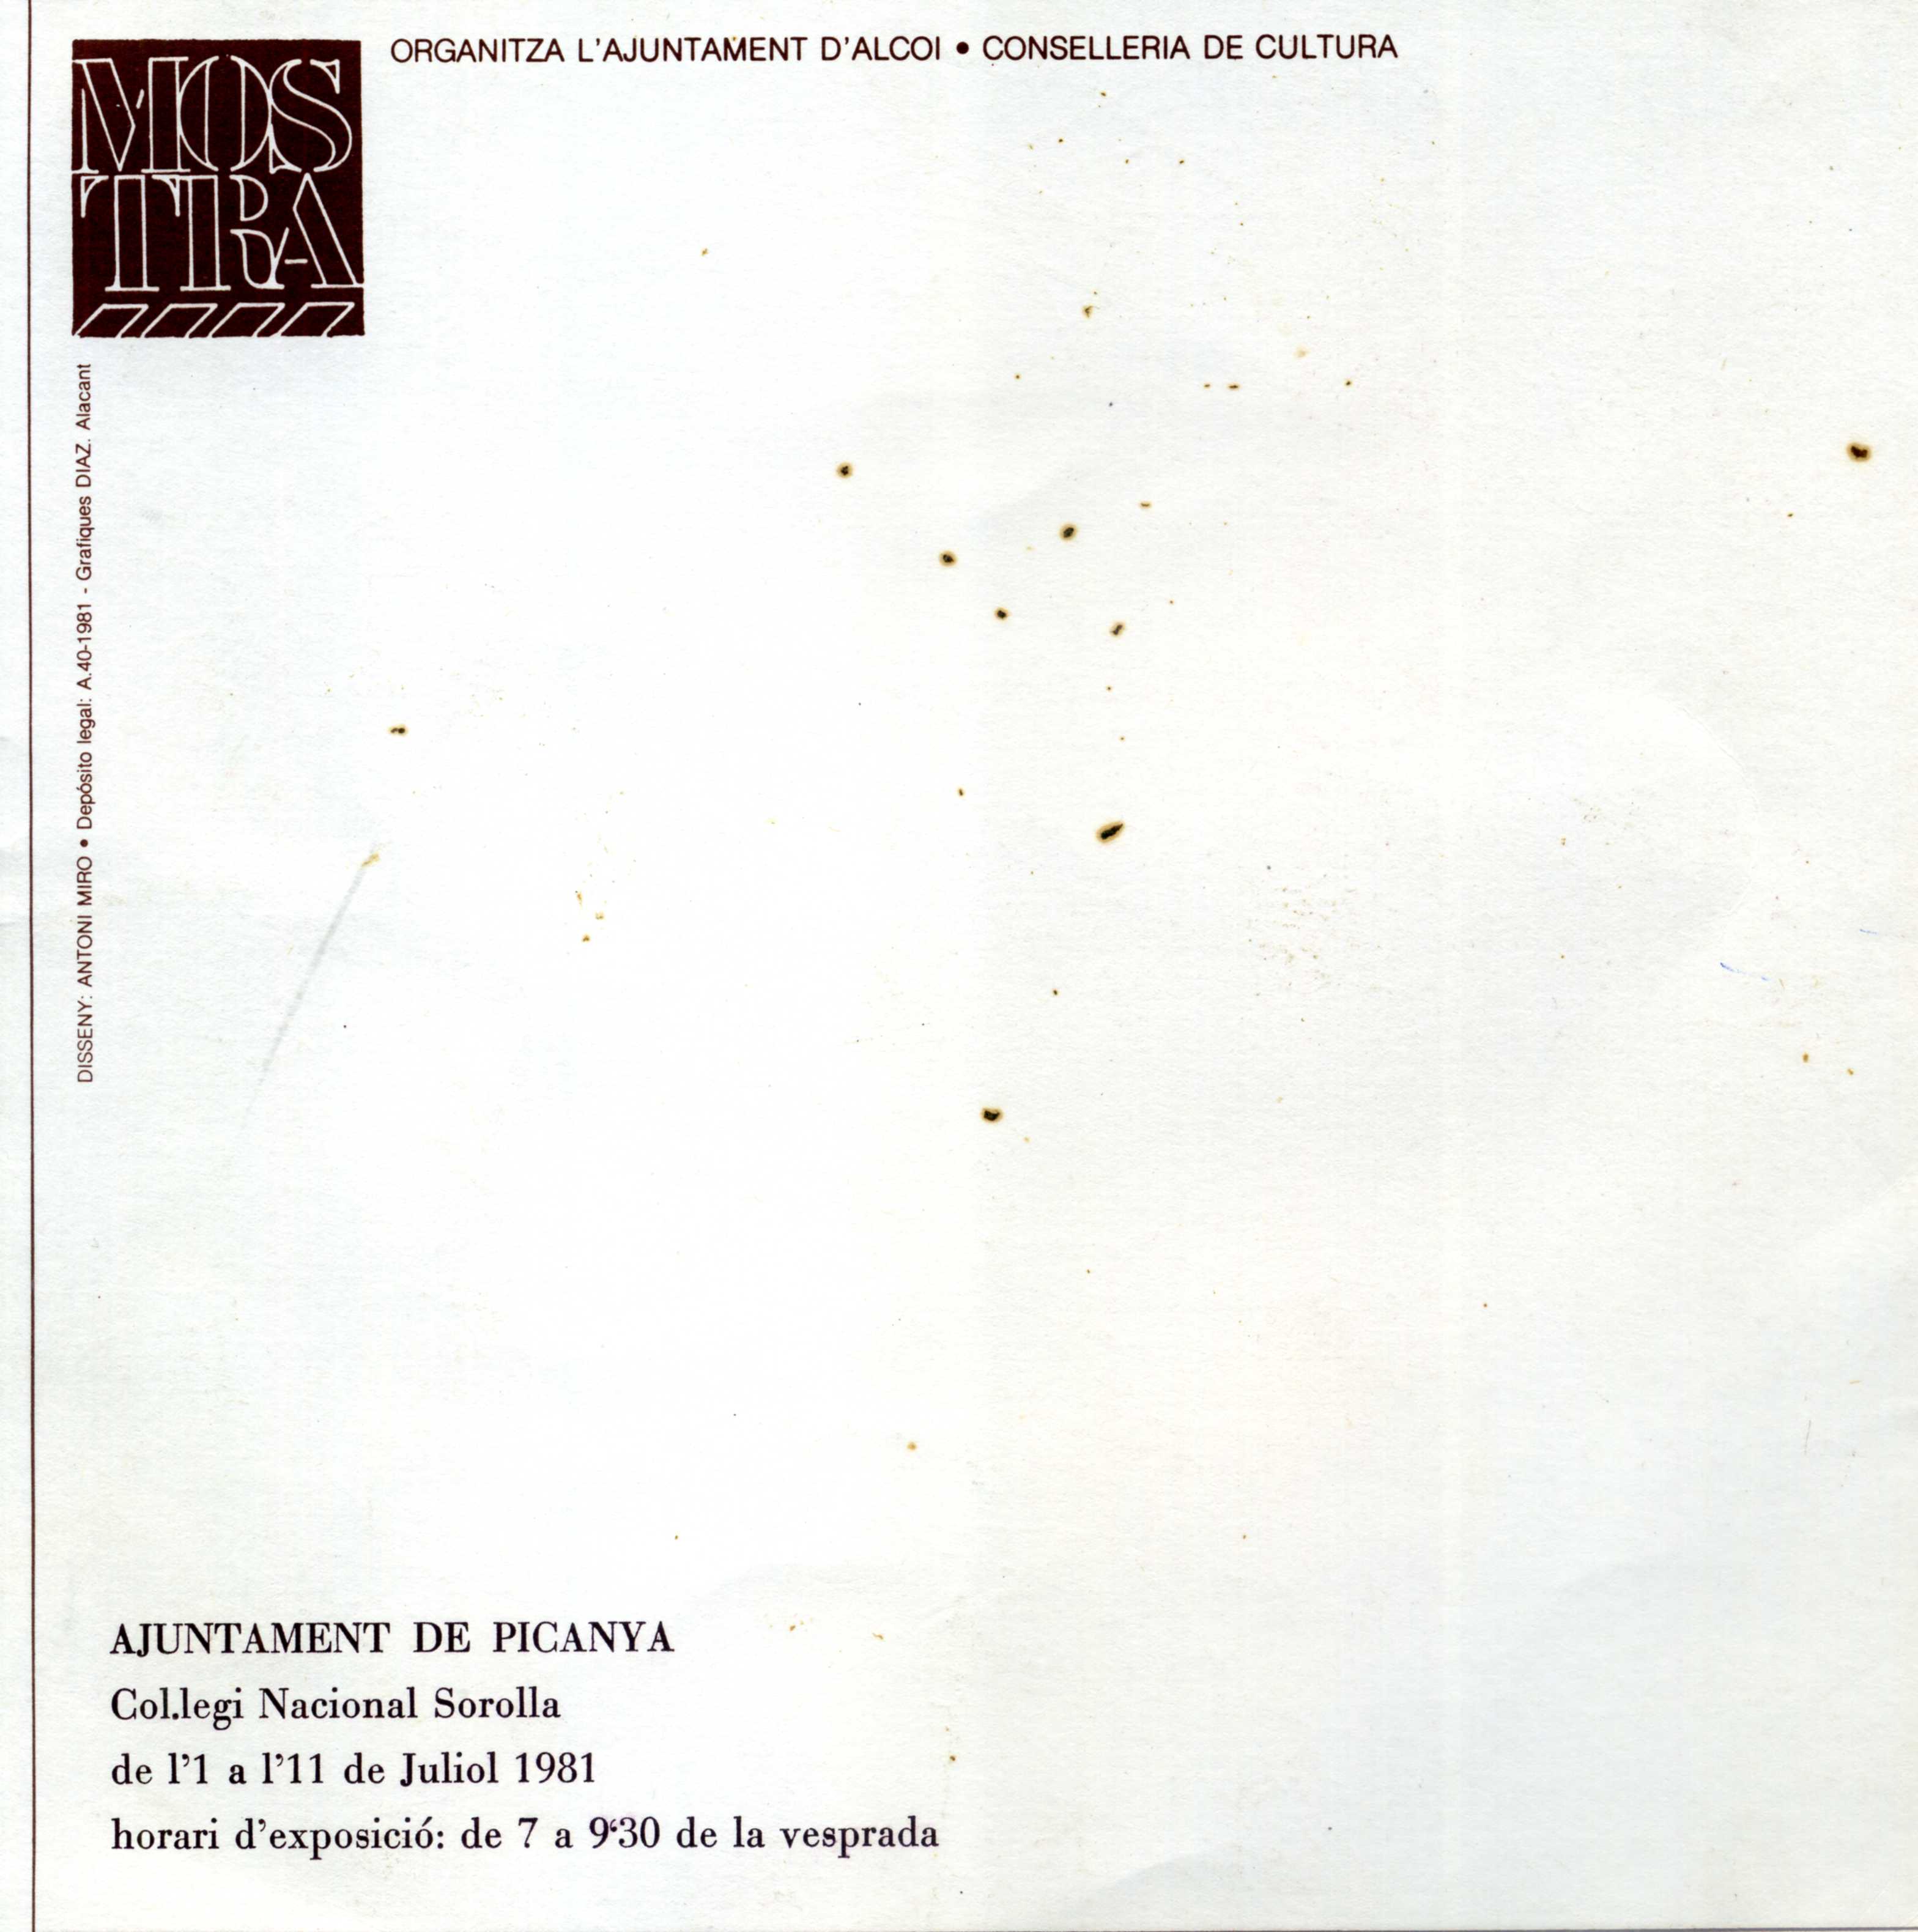 CEL-DO-A0136 - Mostra Cultural del País Valencià (4)